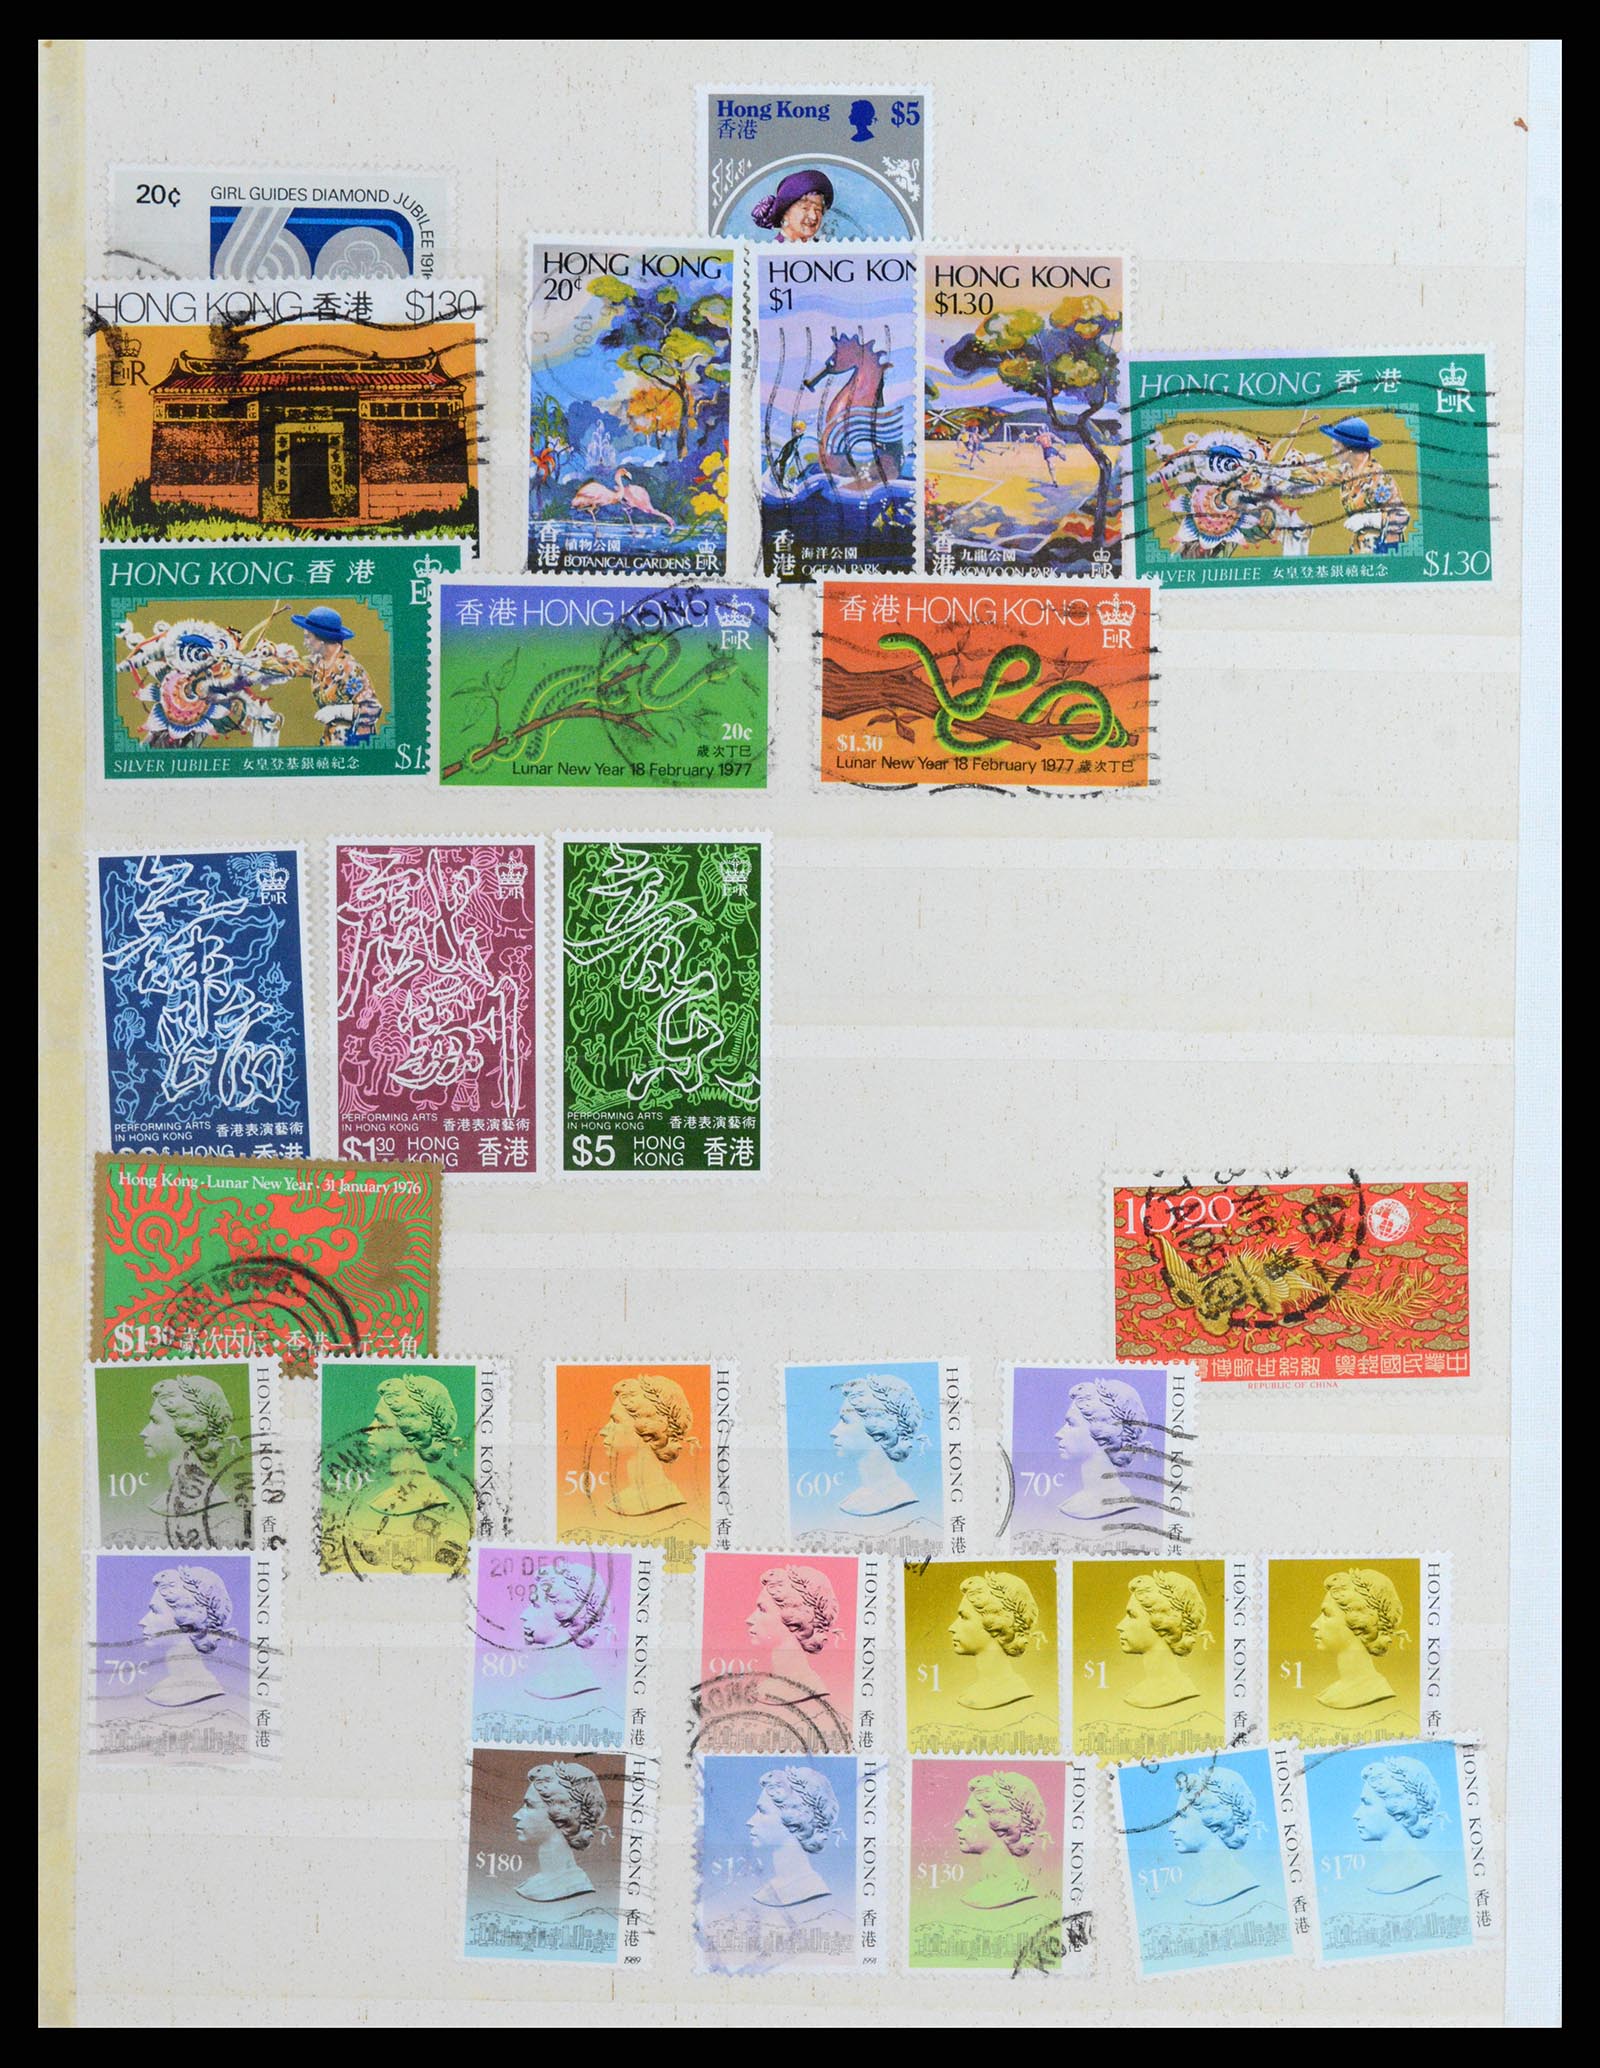 37358 026 - Stamp collection 37358 Hong Kong 1861-1997.